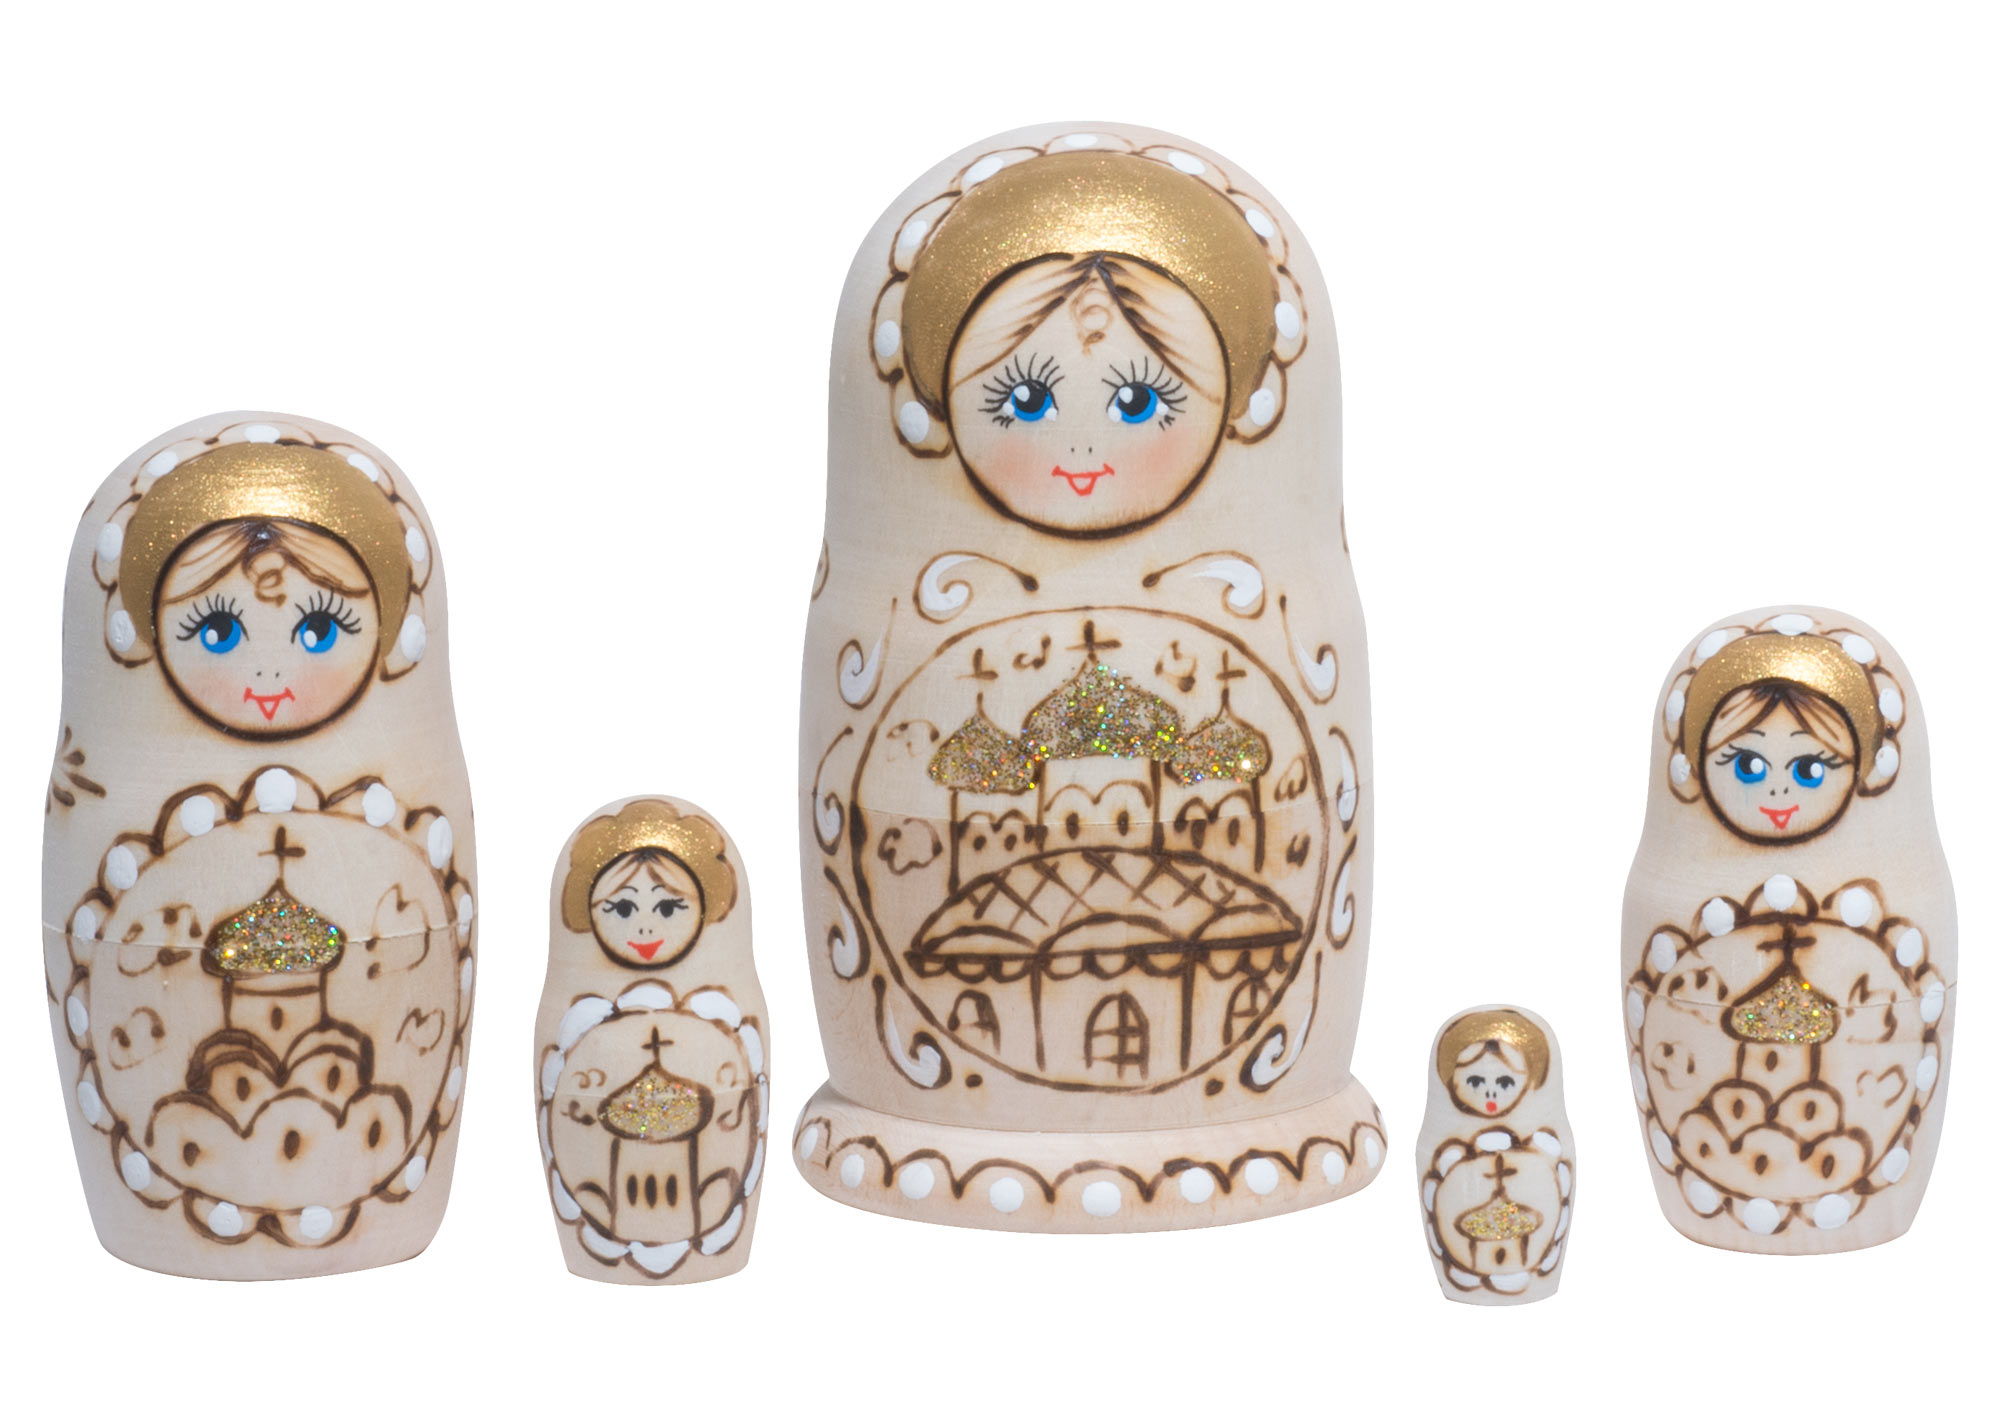 Buy Woodburned Church Babushka Doll 5pc./4" at GoldenCockerel.com